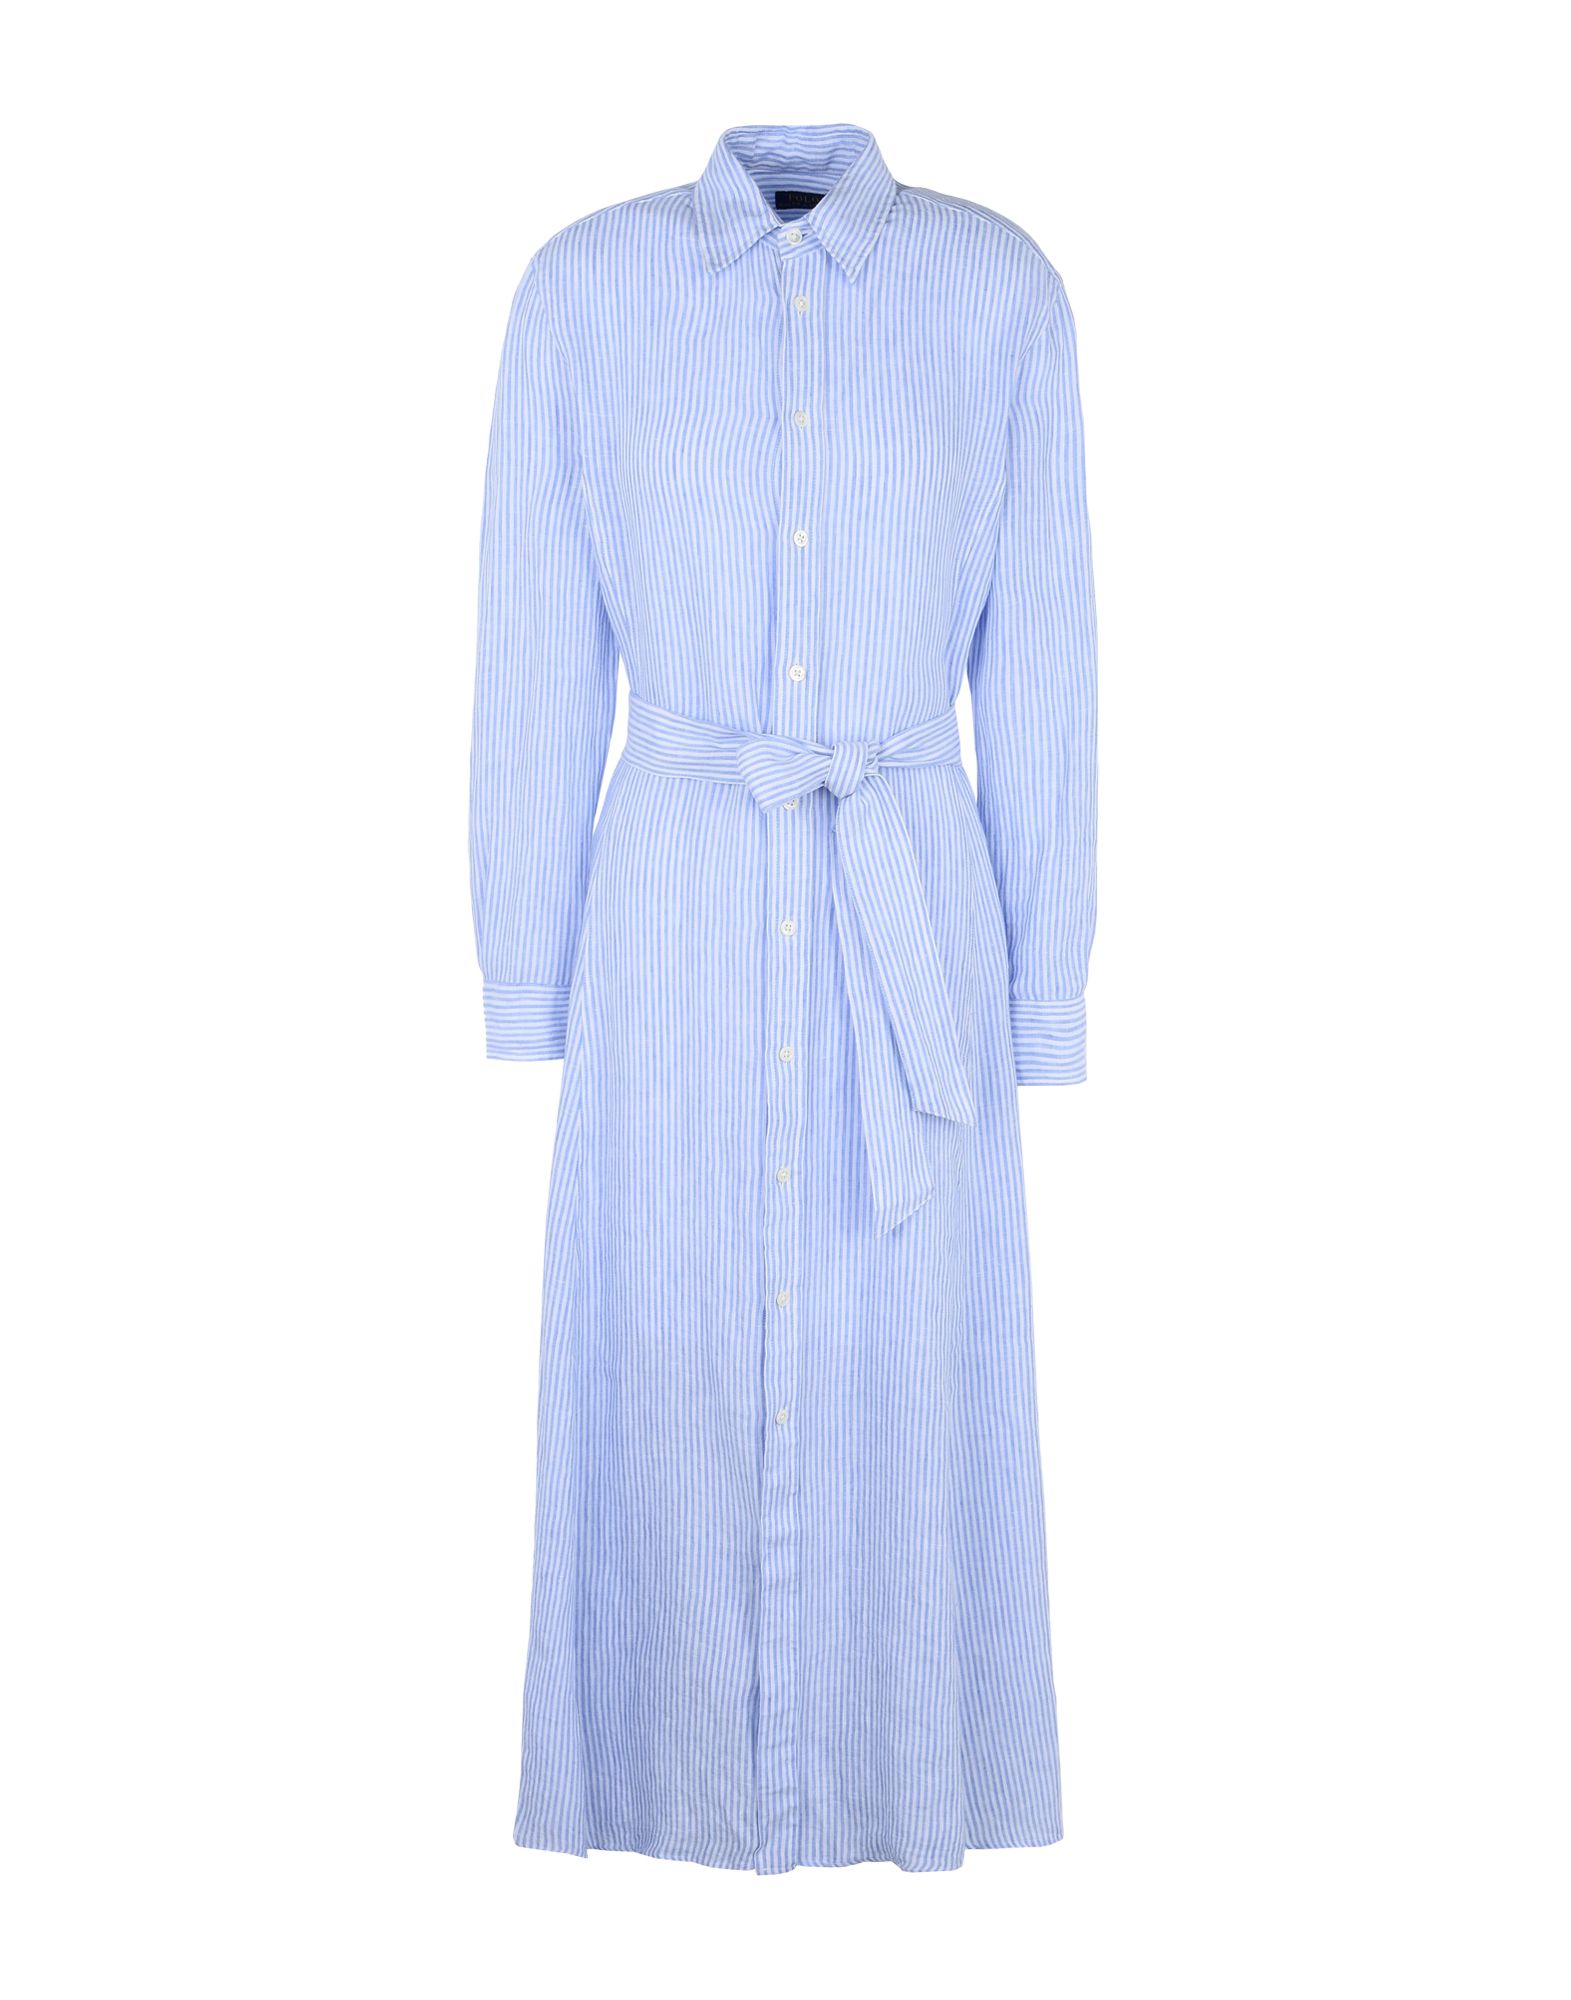 《送料無料》POLO RALPH LAUREN レディース ロングワンピース＆ドレス スカイブルー 6 麻 100% Striped Linen Shirtdress